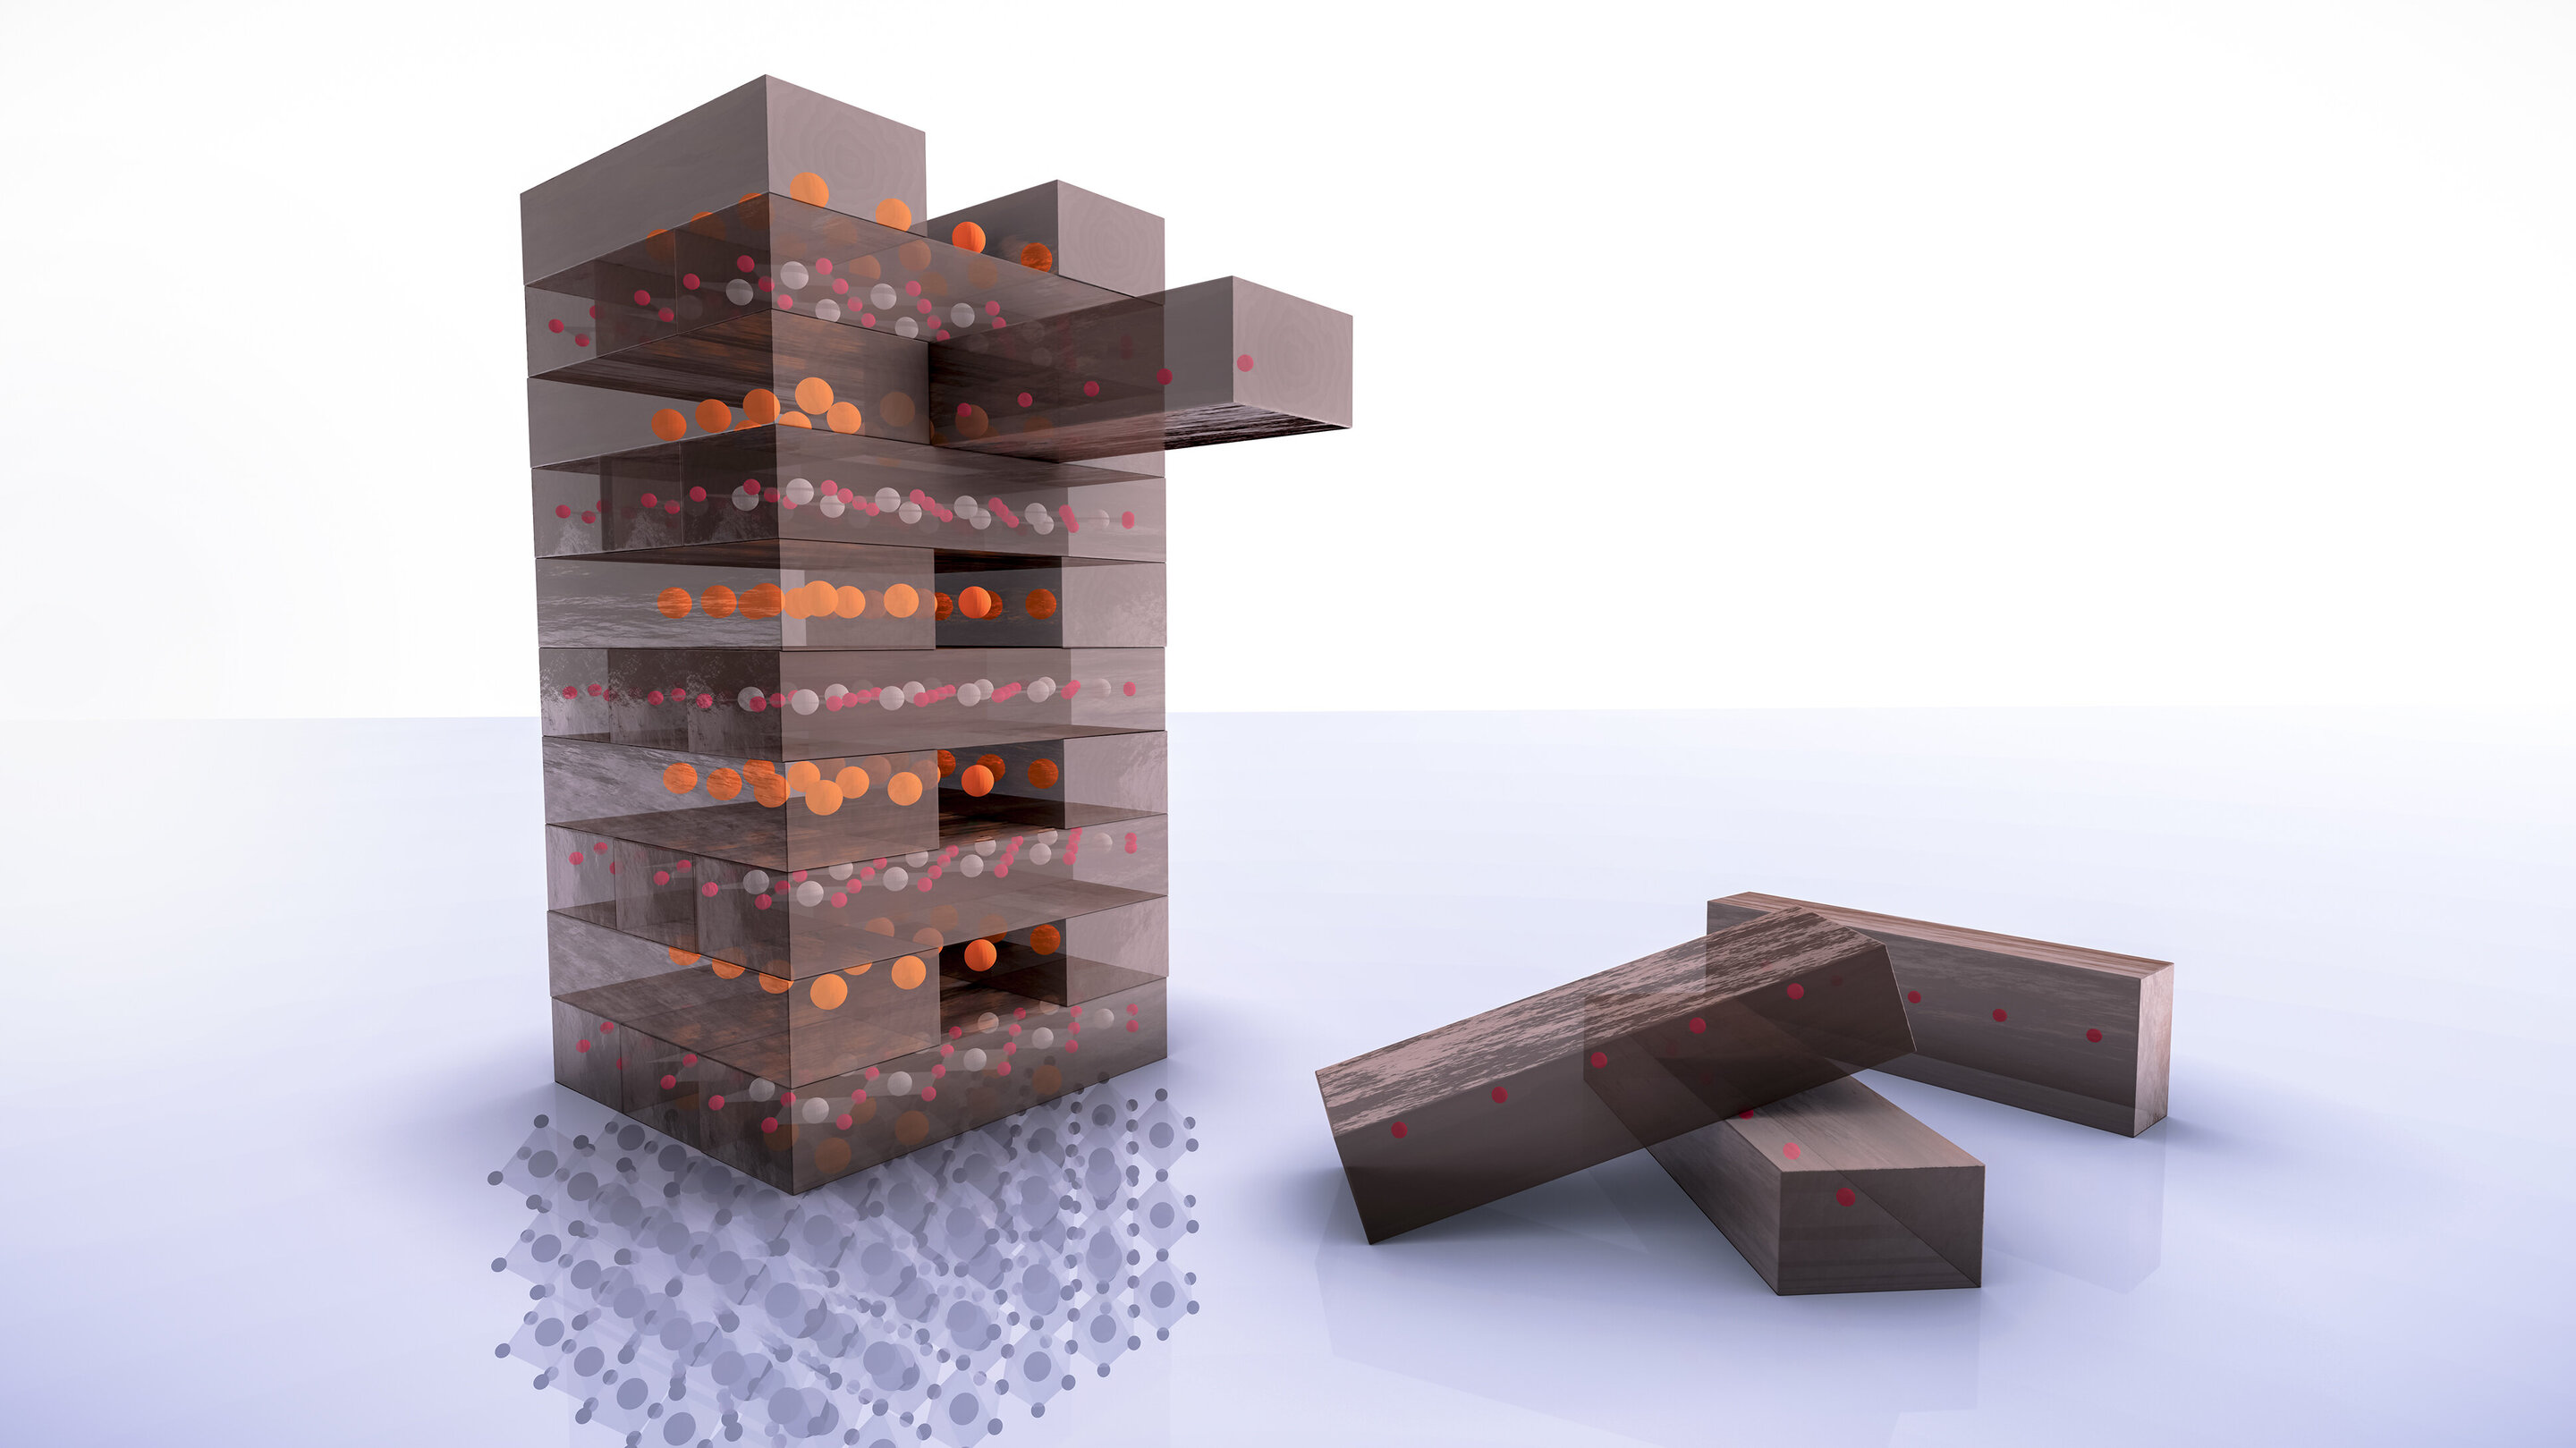 Hình minh họa bước chủ chốt trong quá trình tạo vật liệu siêu dẫn mới. Các nhà nghiên cứu, bằng phương pháp hóa học, đã tách lớp nguyên tử oxy ra khỏi chất ban đầu, tương tự như việc rút từng miếng ra khỏi khối trong trò chơi rút gỗ. Ảnh: Greg Stewart/SLAC.